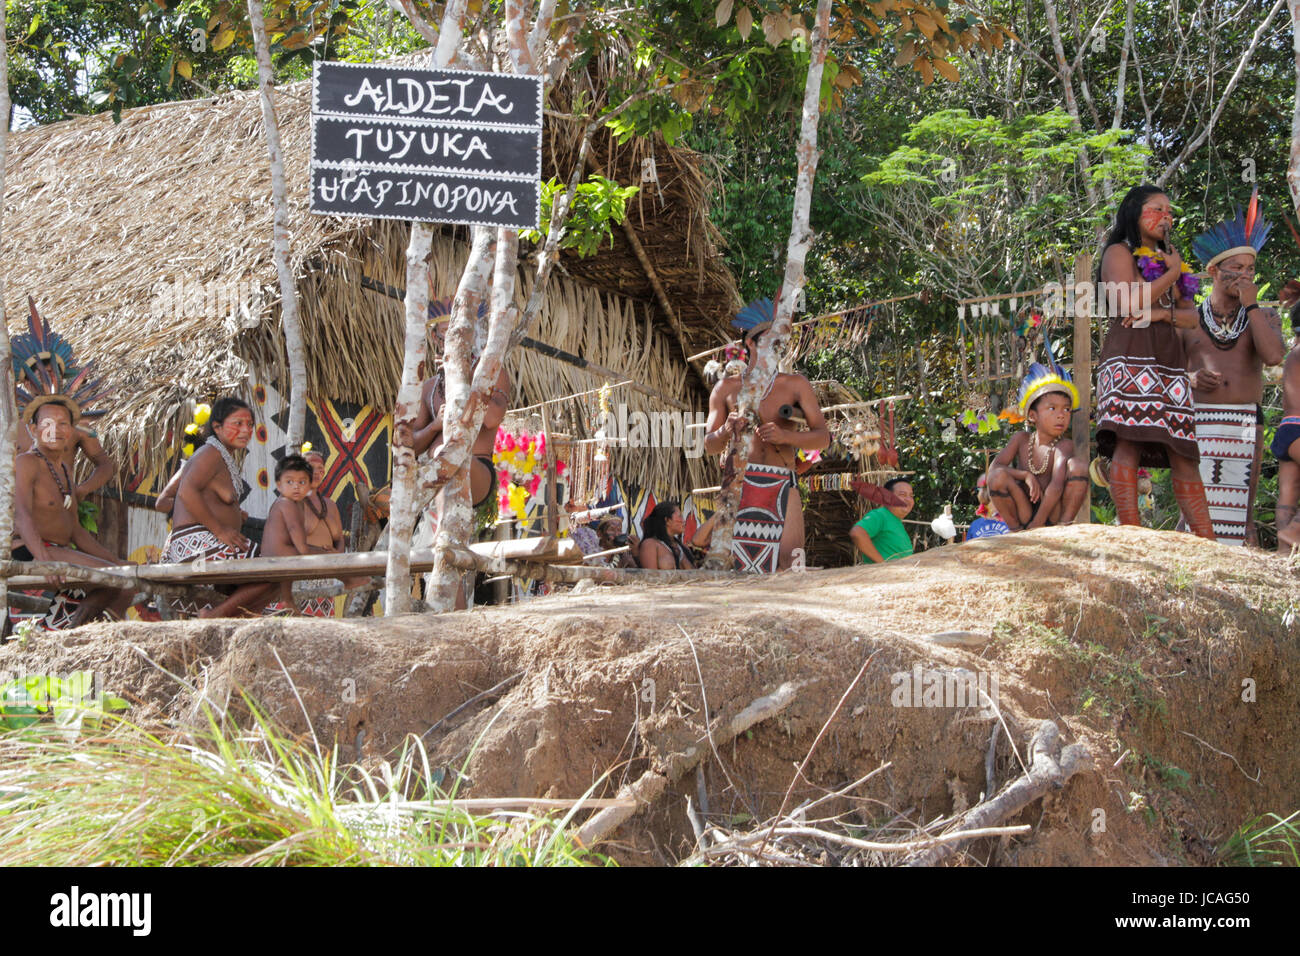 MANAUS, 10.06.2017 : Les membres de la tribu des Tuyuka dans la forêt amazonienne. (Photo : Néstor J. Beremblum / Alamy News) Banque D'Images